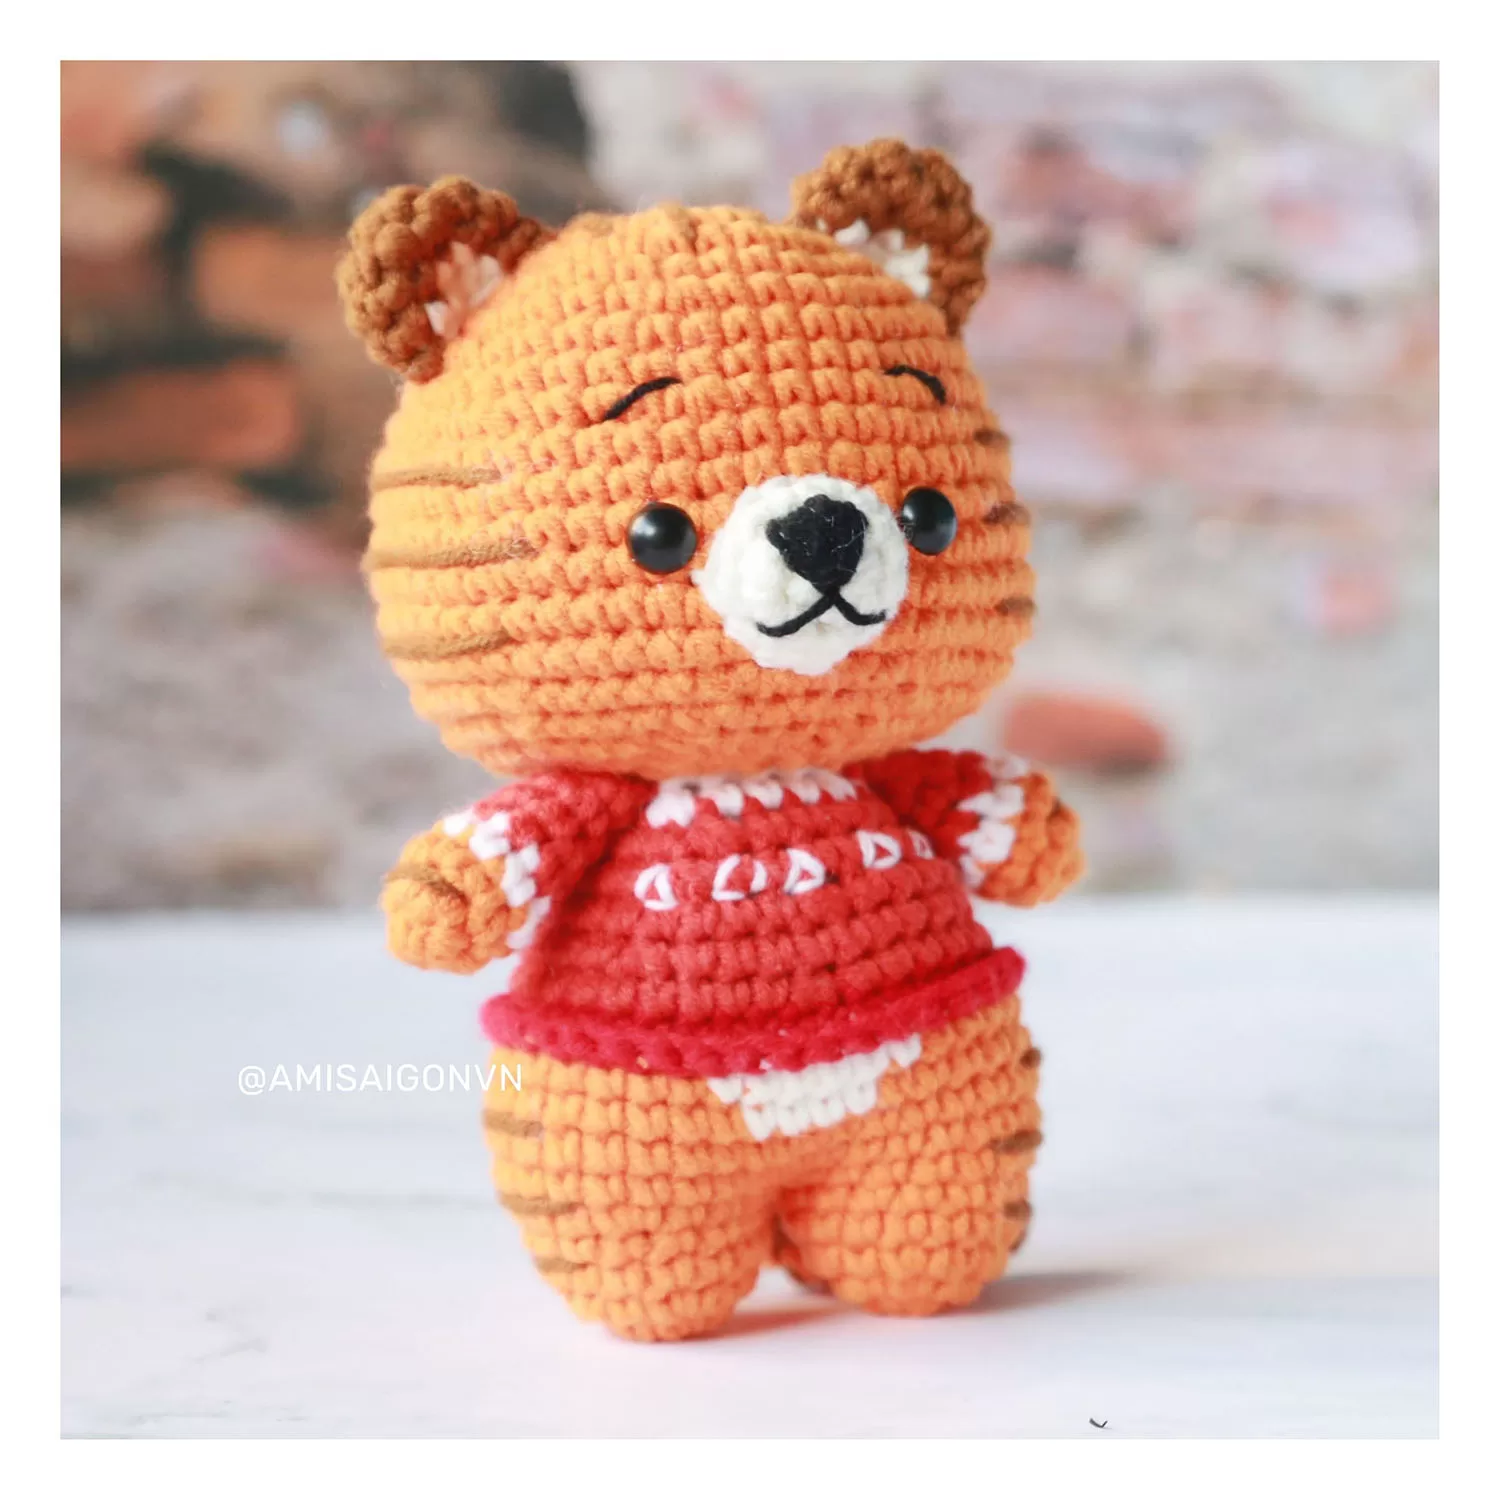 Tiger Amigurumi | Crochet Pattern | Amigurumi Tutorial PDF in English | AmiSaigon